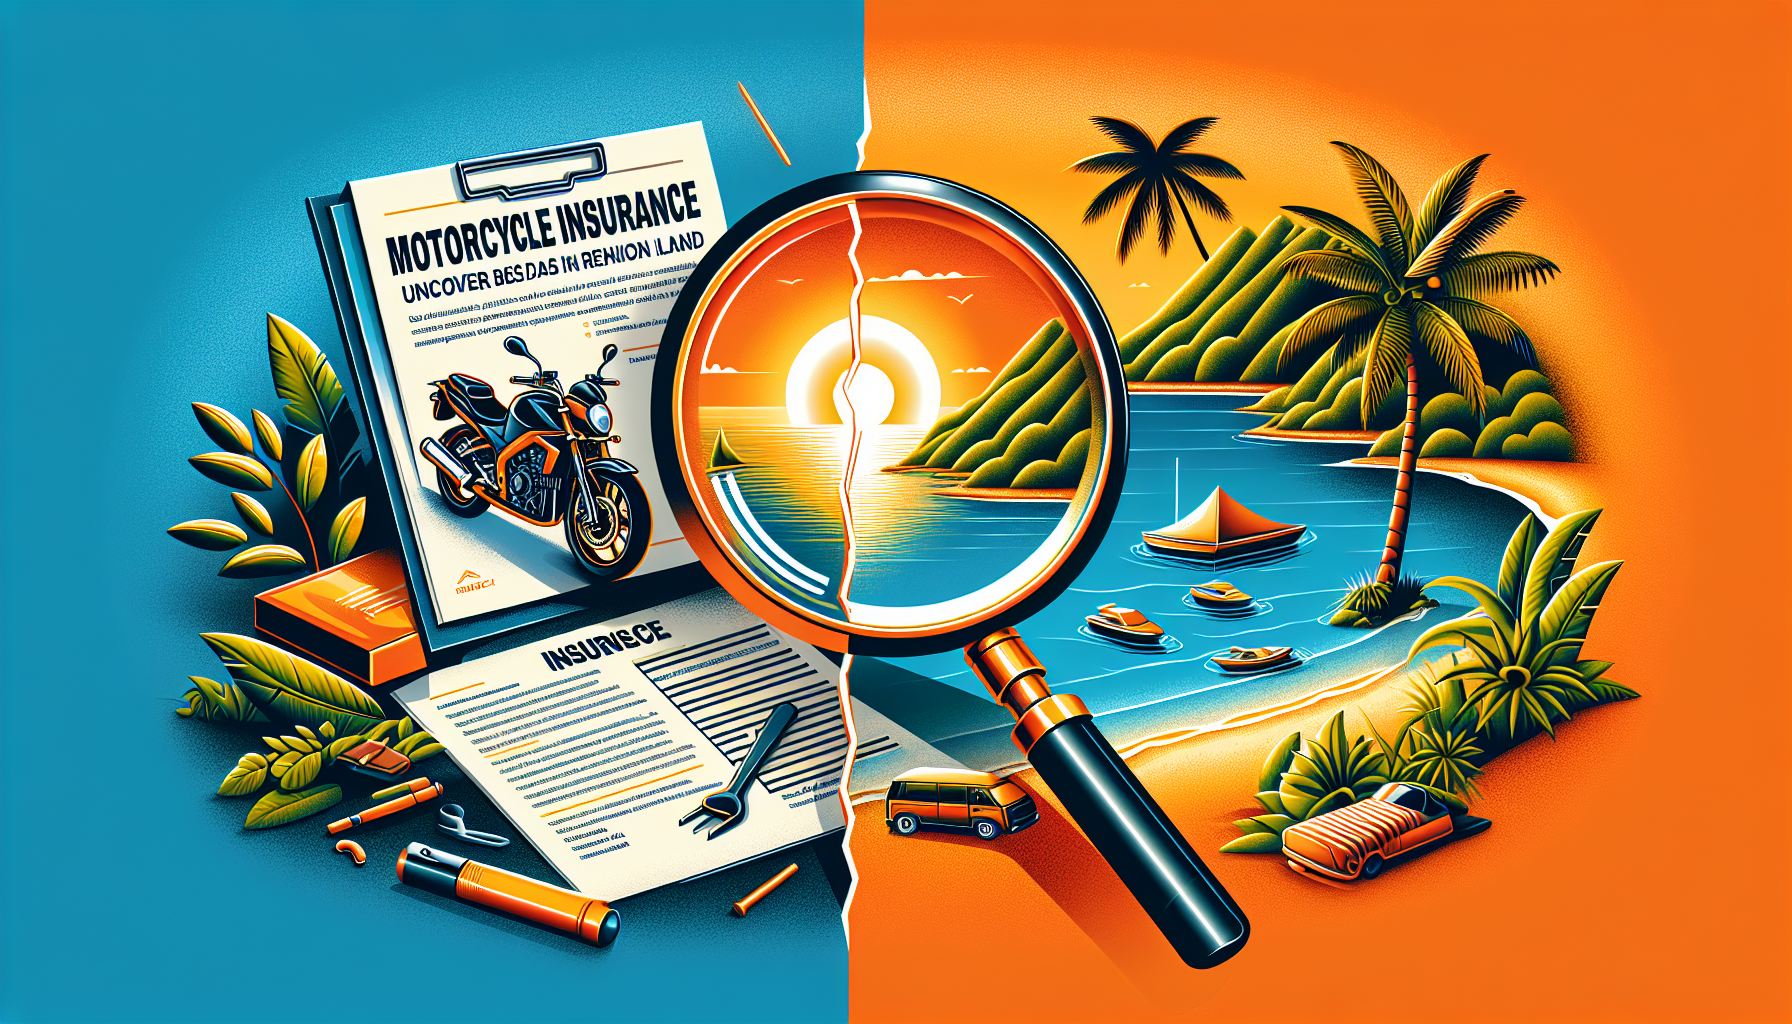 découvrez les dernières actualités sur l'assurance moto à la réunion et trouvez des informations utiles pour assurer votre moto dans l'île.